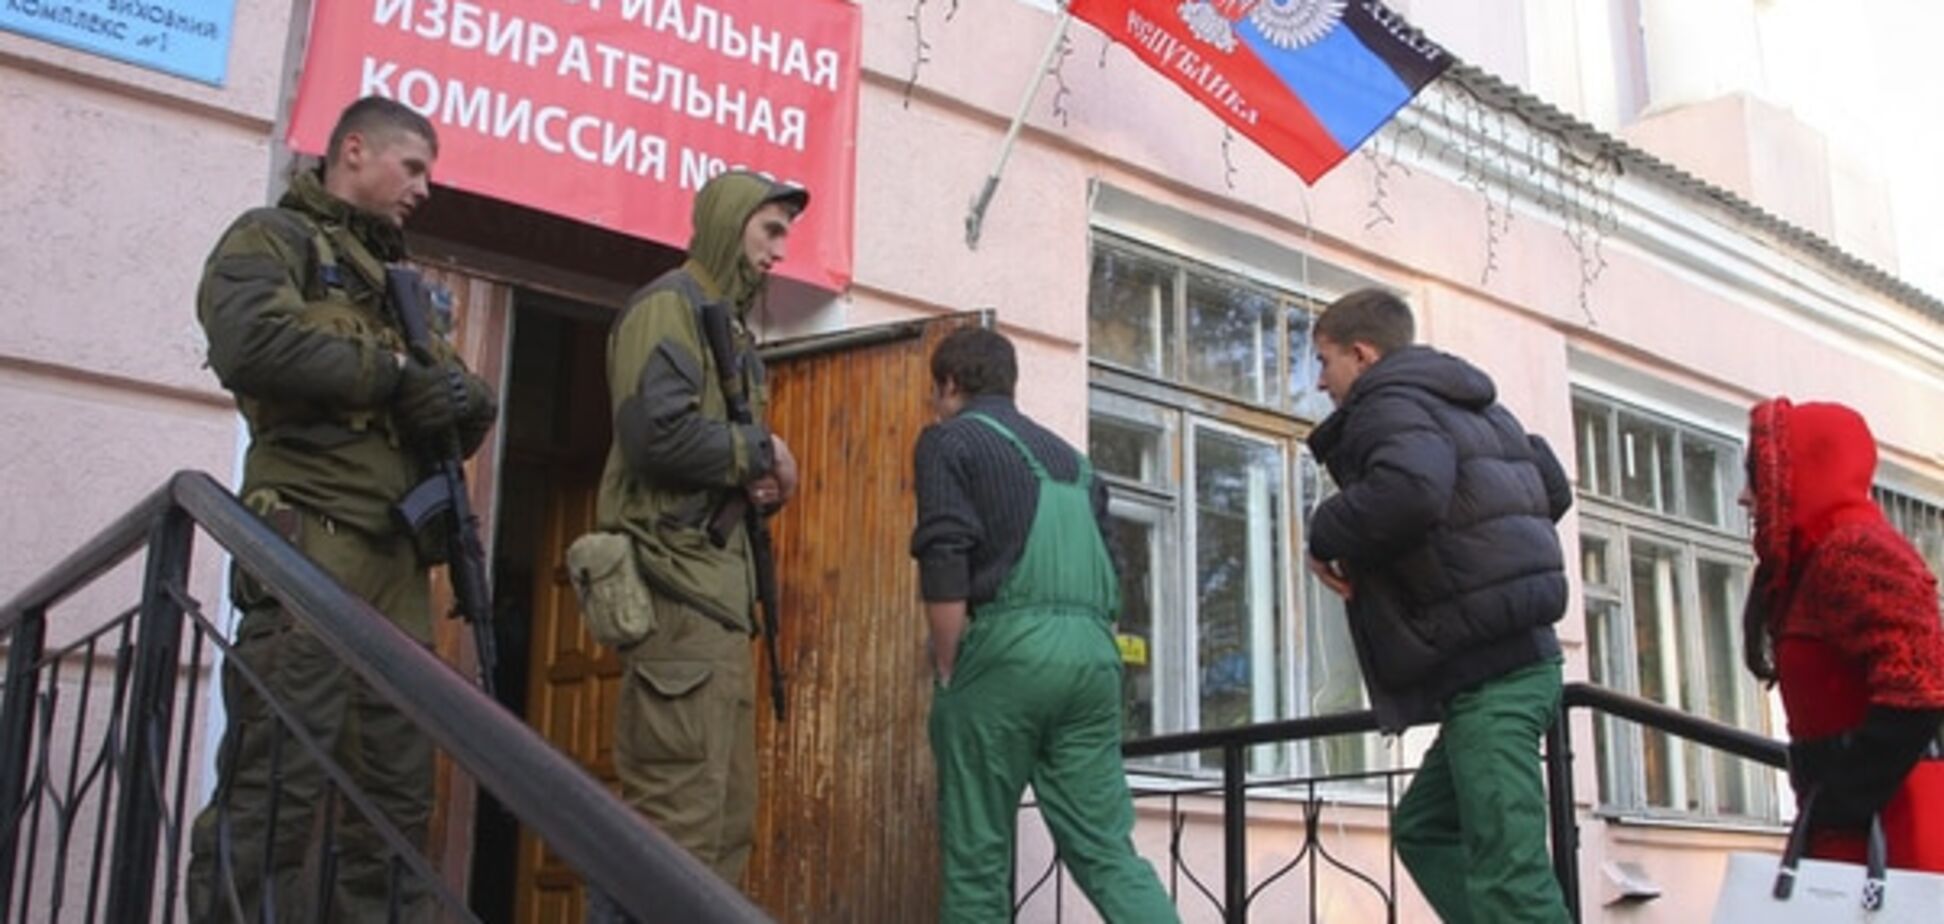 Переговоры по Донбассу: террористы недовольны украинским условием выборов